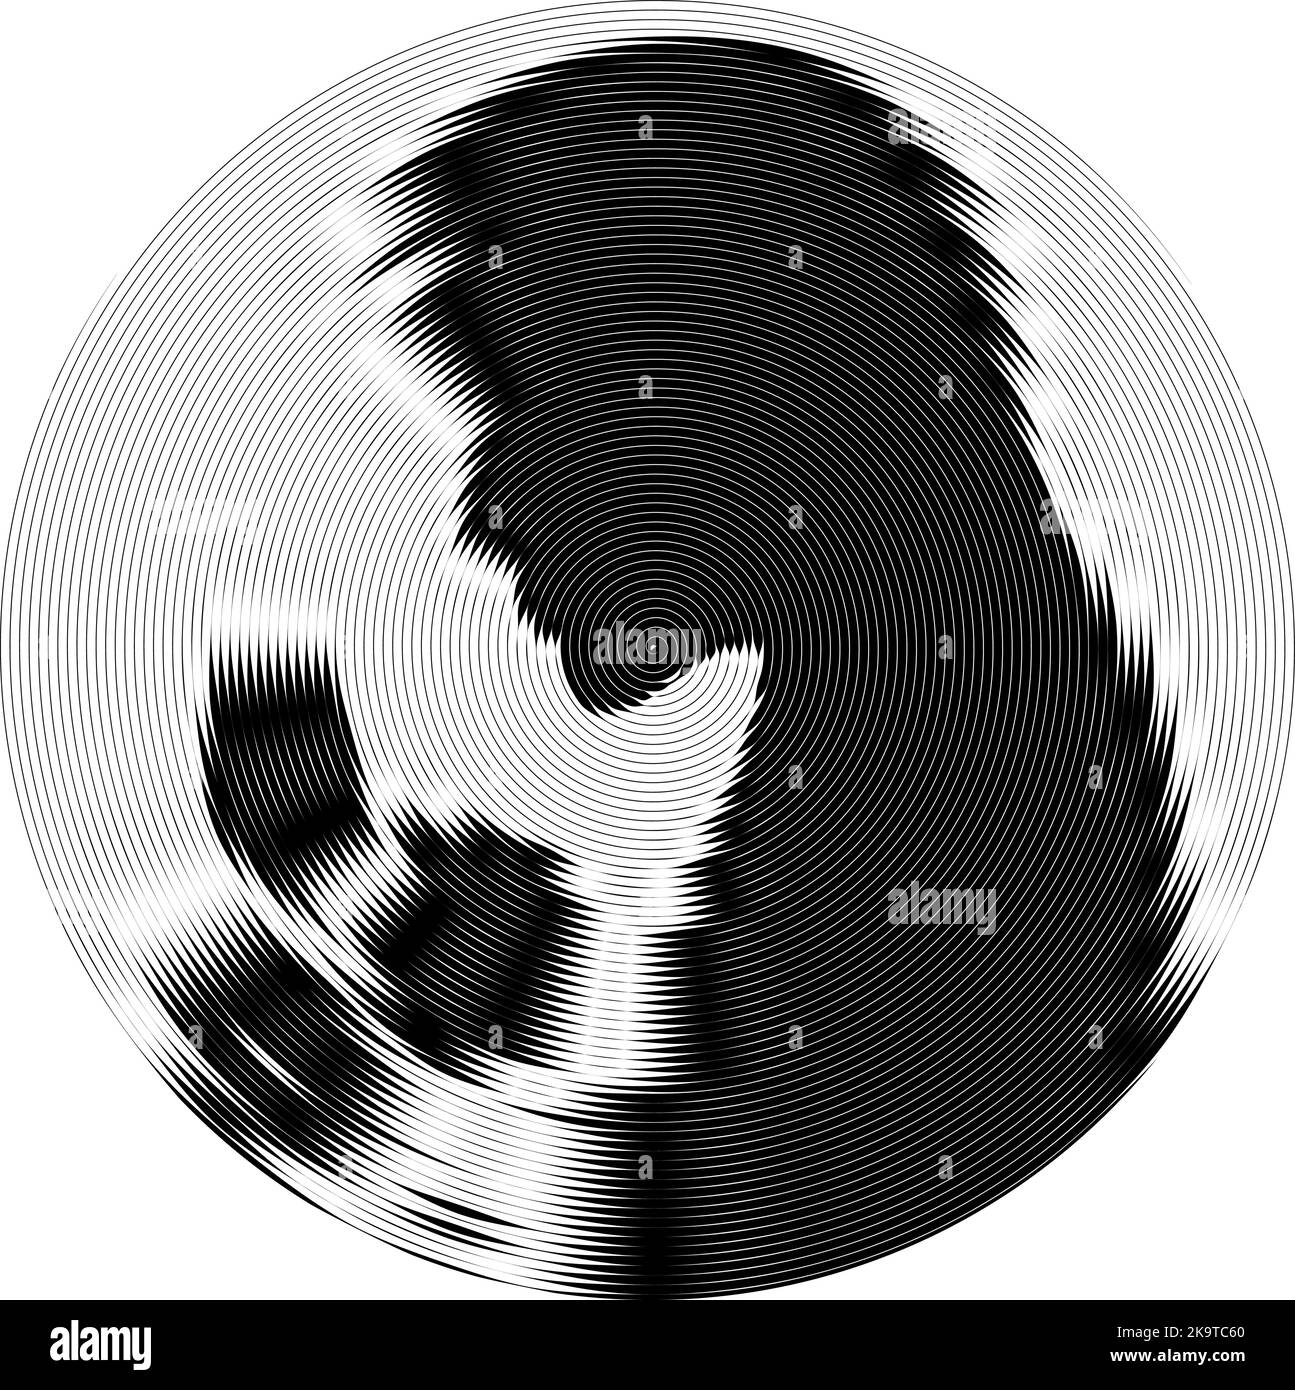 Abstrakter Hintergrund mit schwarzen und weißen Streifen, Vektor-Design-Element. Frau Silhouette im Kreis. Stock Vektor